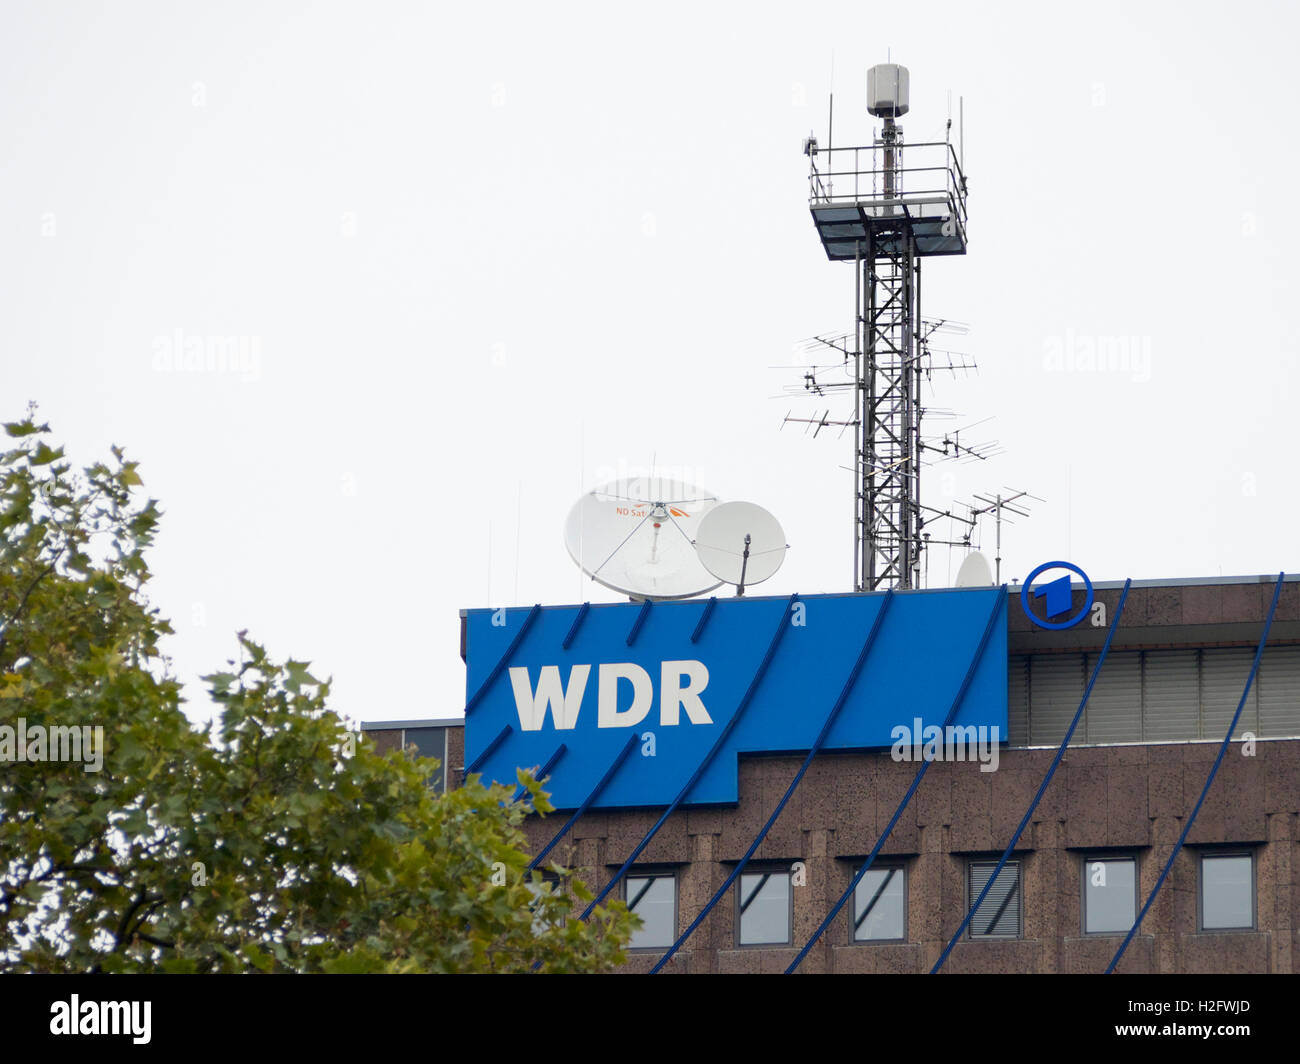 WDR west Deutsche Rundfunk TV station logo avec des antennes paraboliques et tour de l'antenne. Cologne, Allemagne Banque D'Images